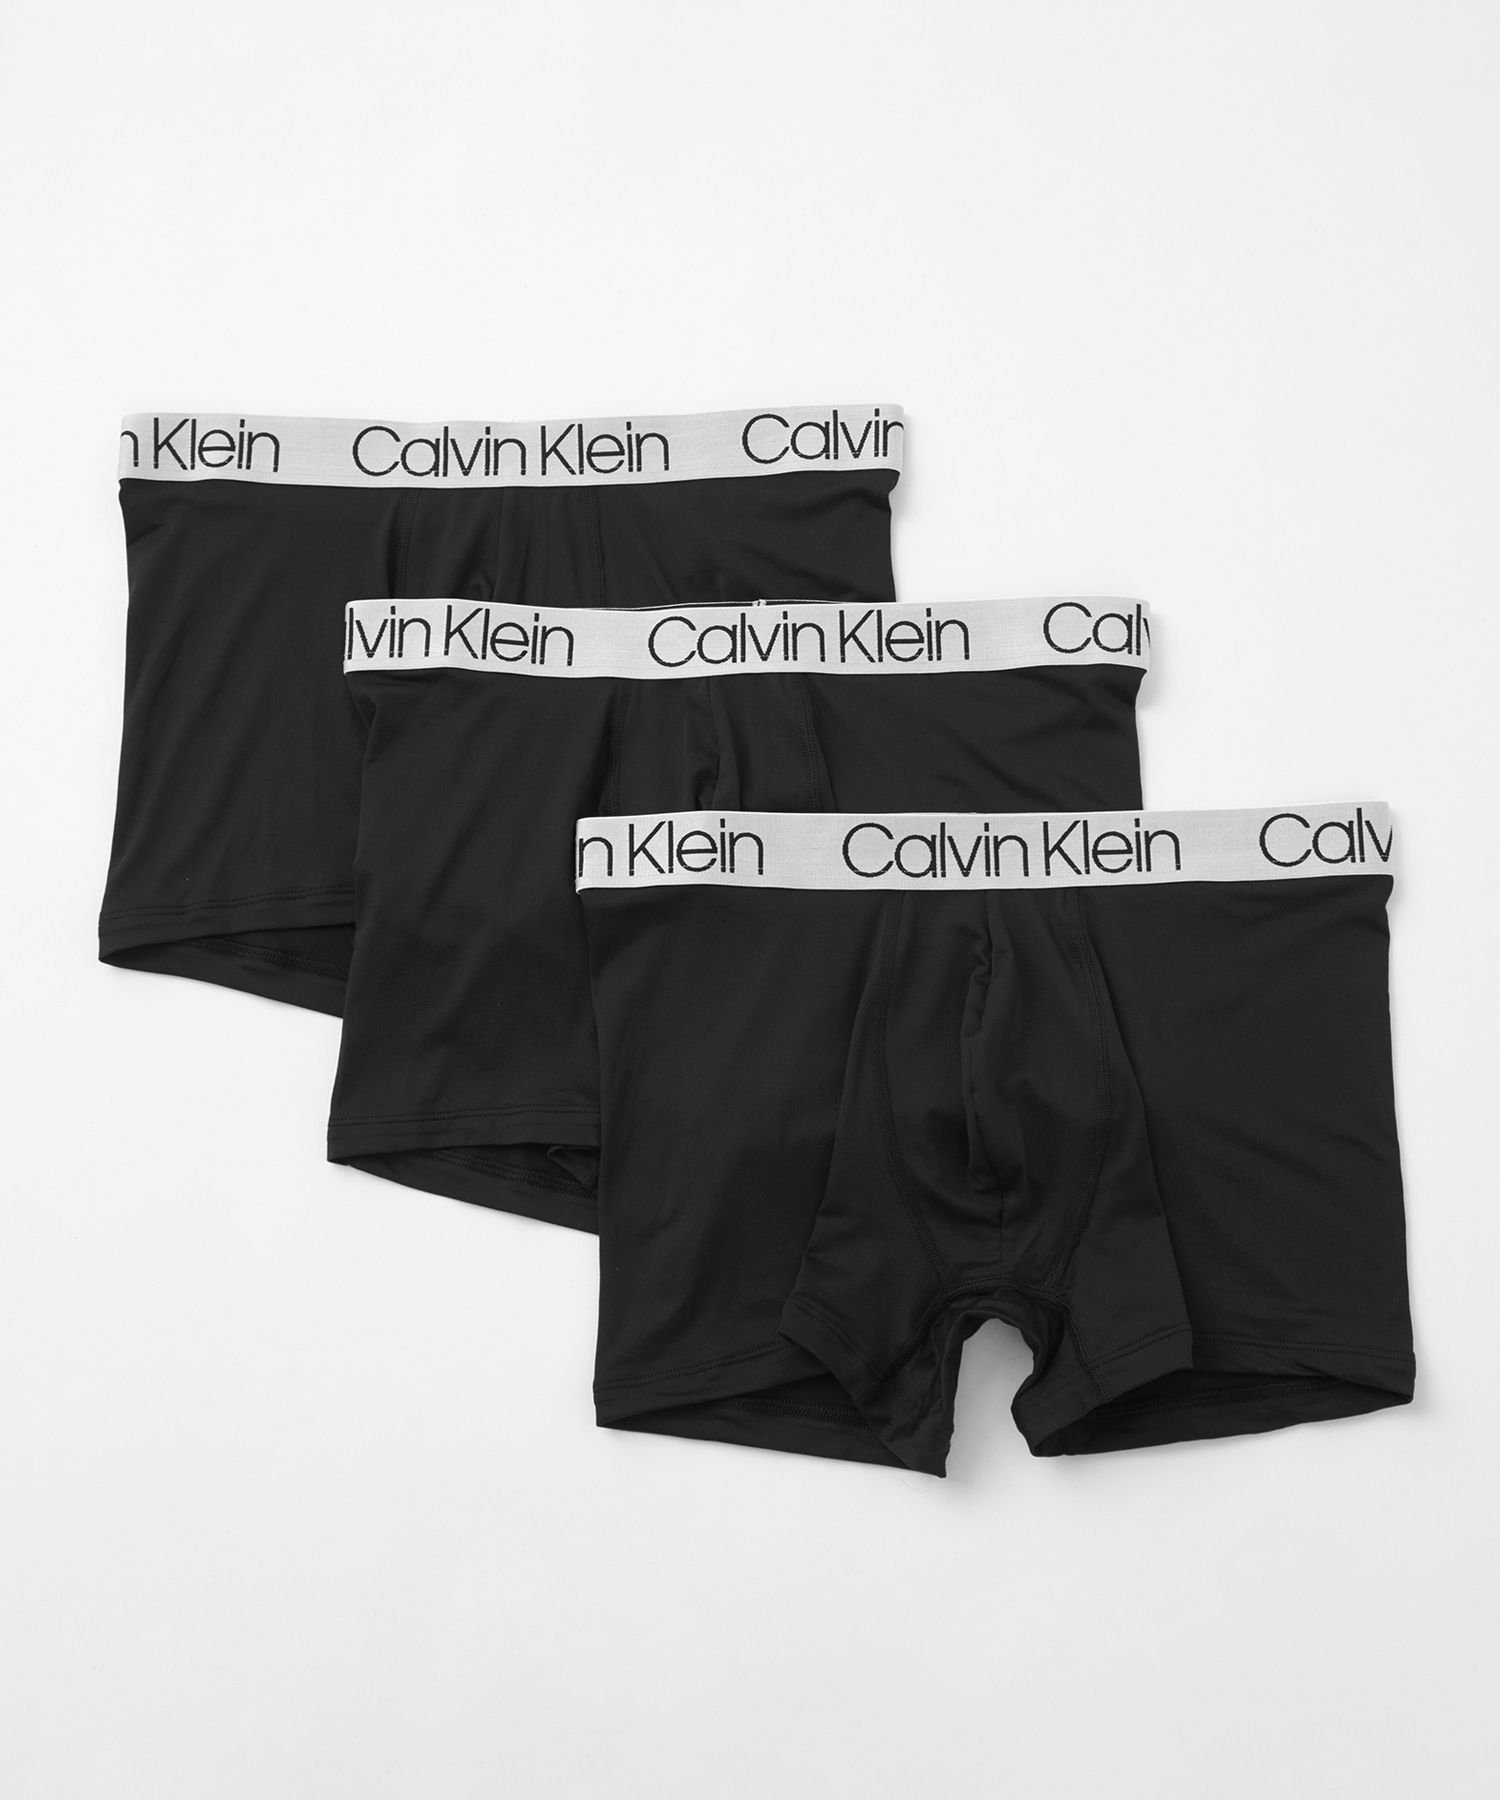 Calvin Klein Underwear (M)【公式ショップ】 カルバンクライン クロマティック ボクサーパンツ 3枚パック Calvin Klein Underwear NP2213O カルバン クライン インナー ルームウェア ボクサーパンツ トランクス ブラック【送料無料】